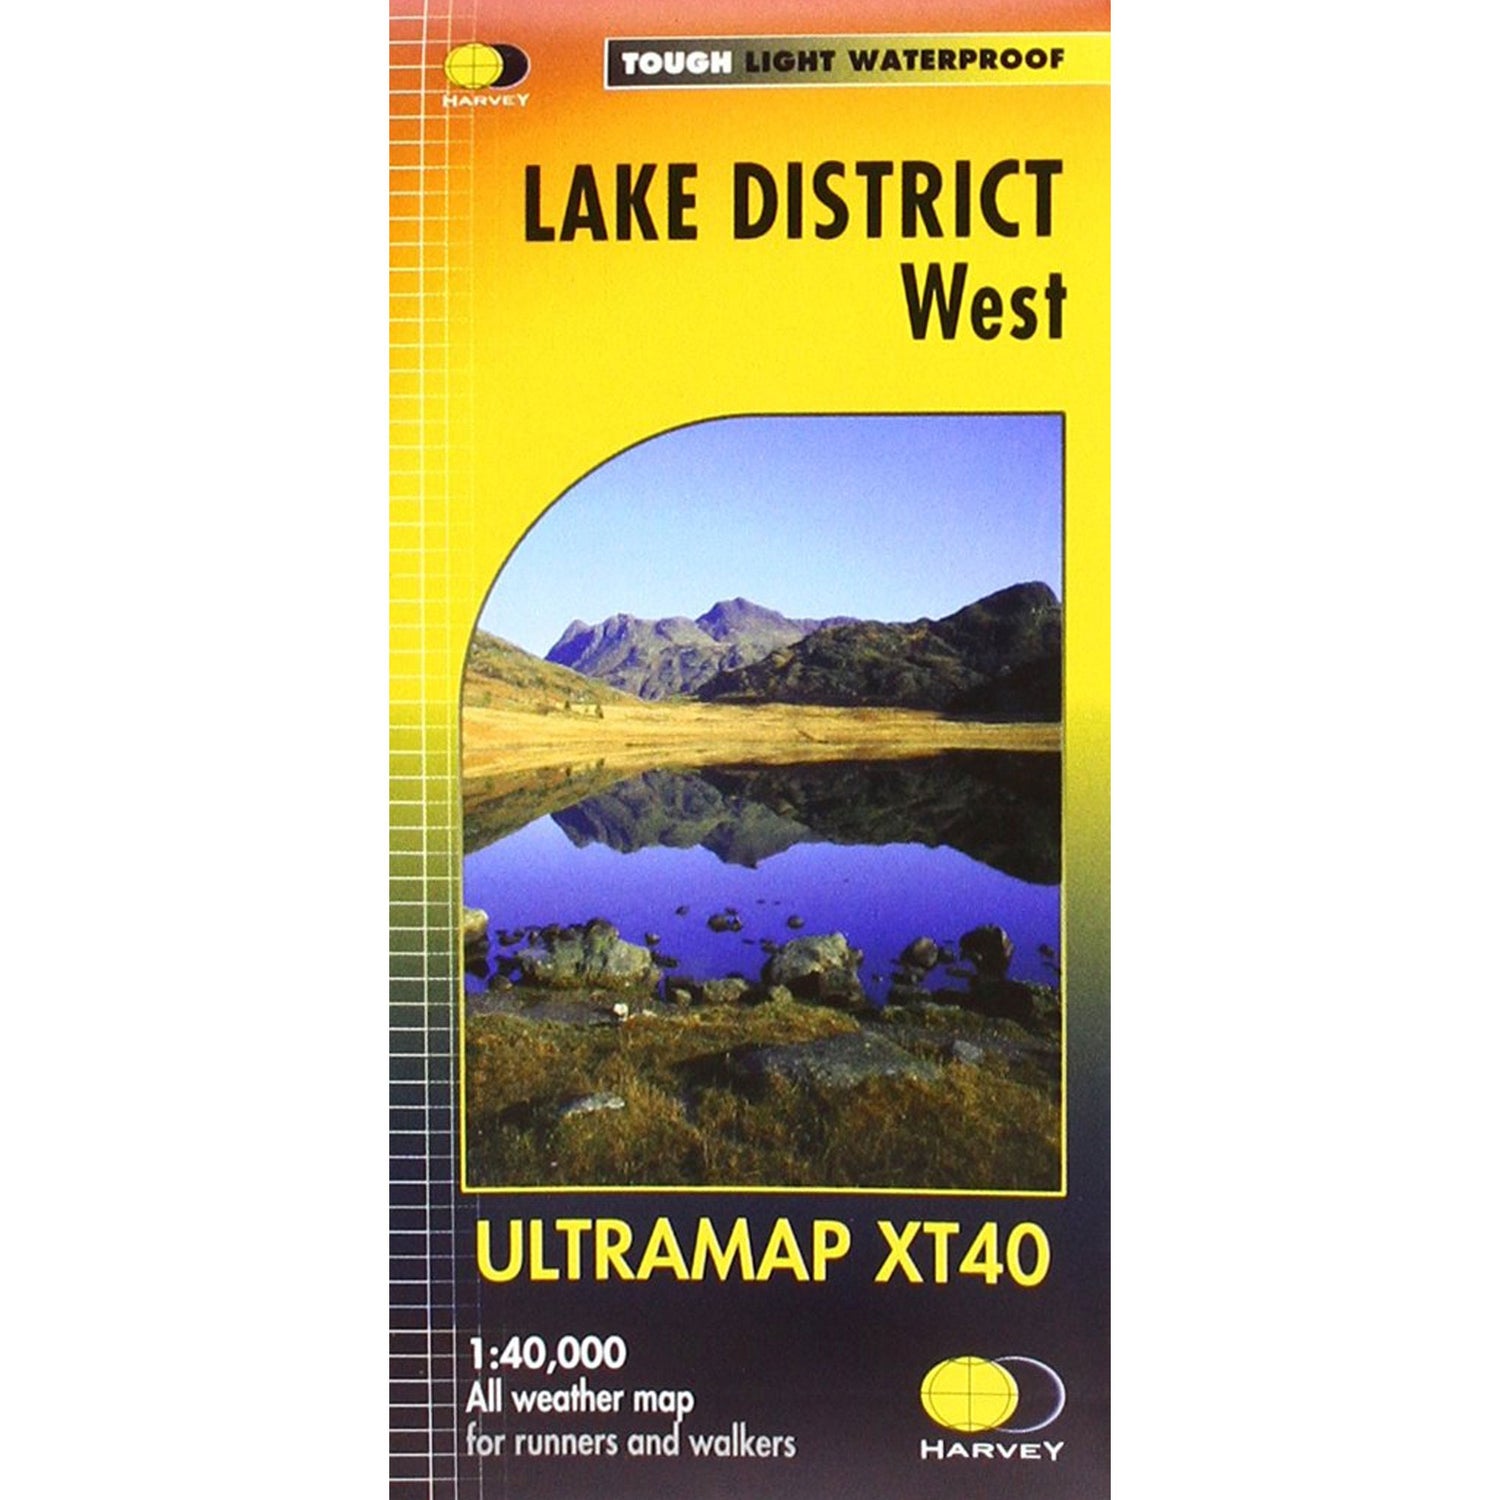 Ultramap Xt40 Map: Lake District West